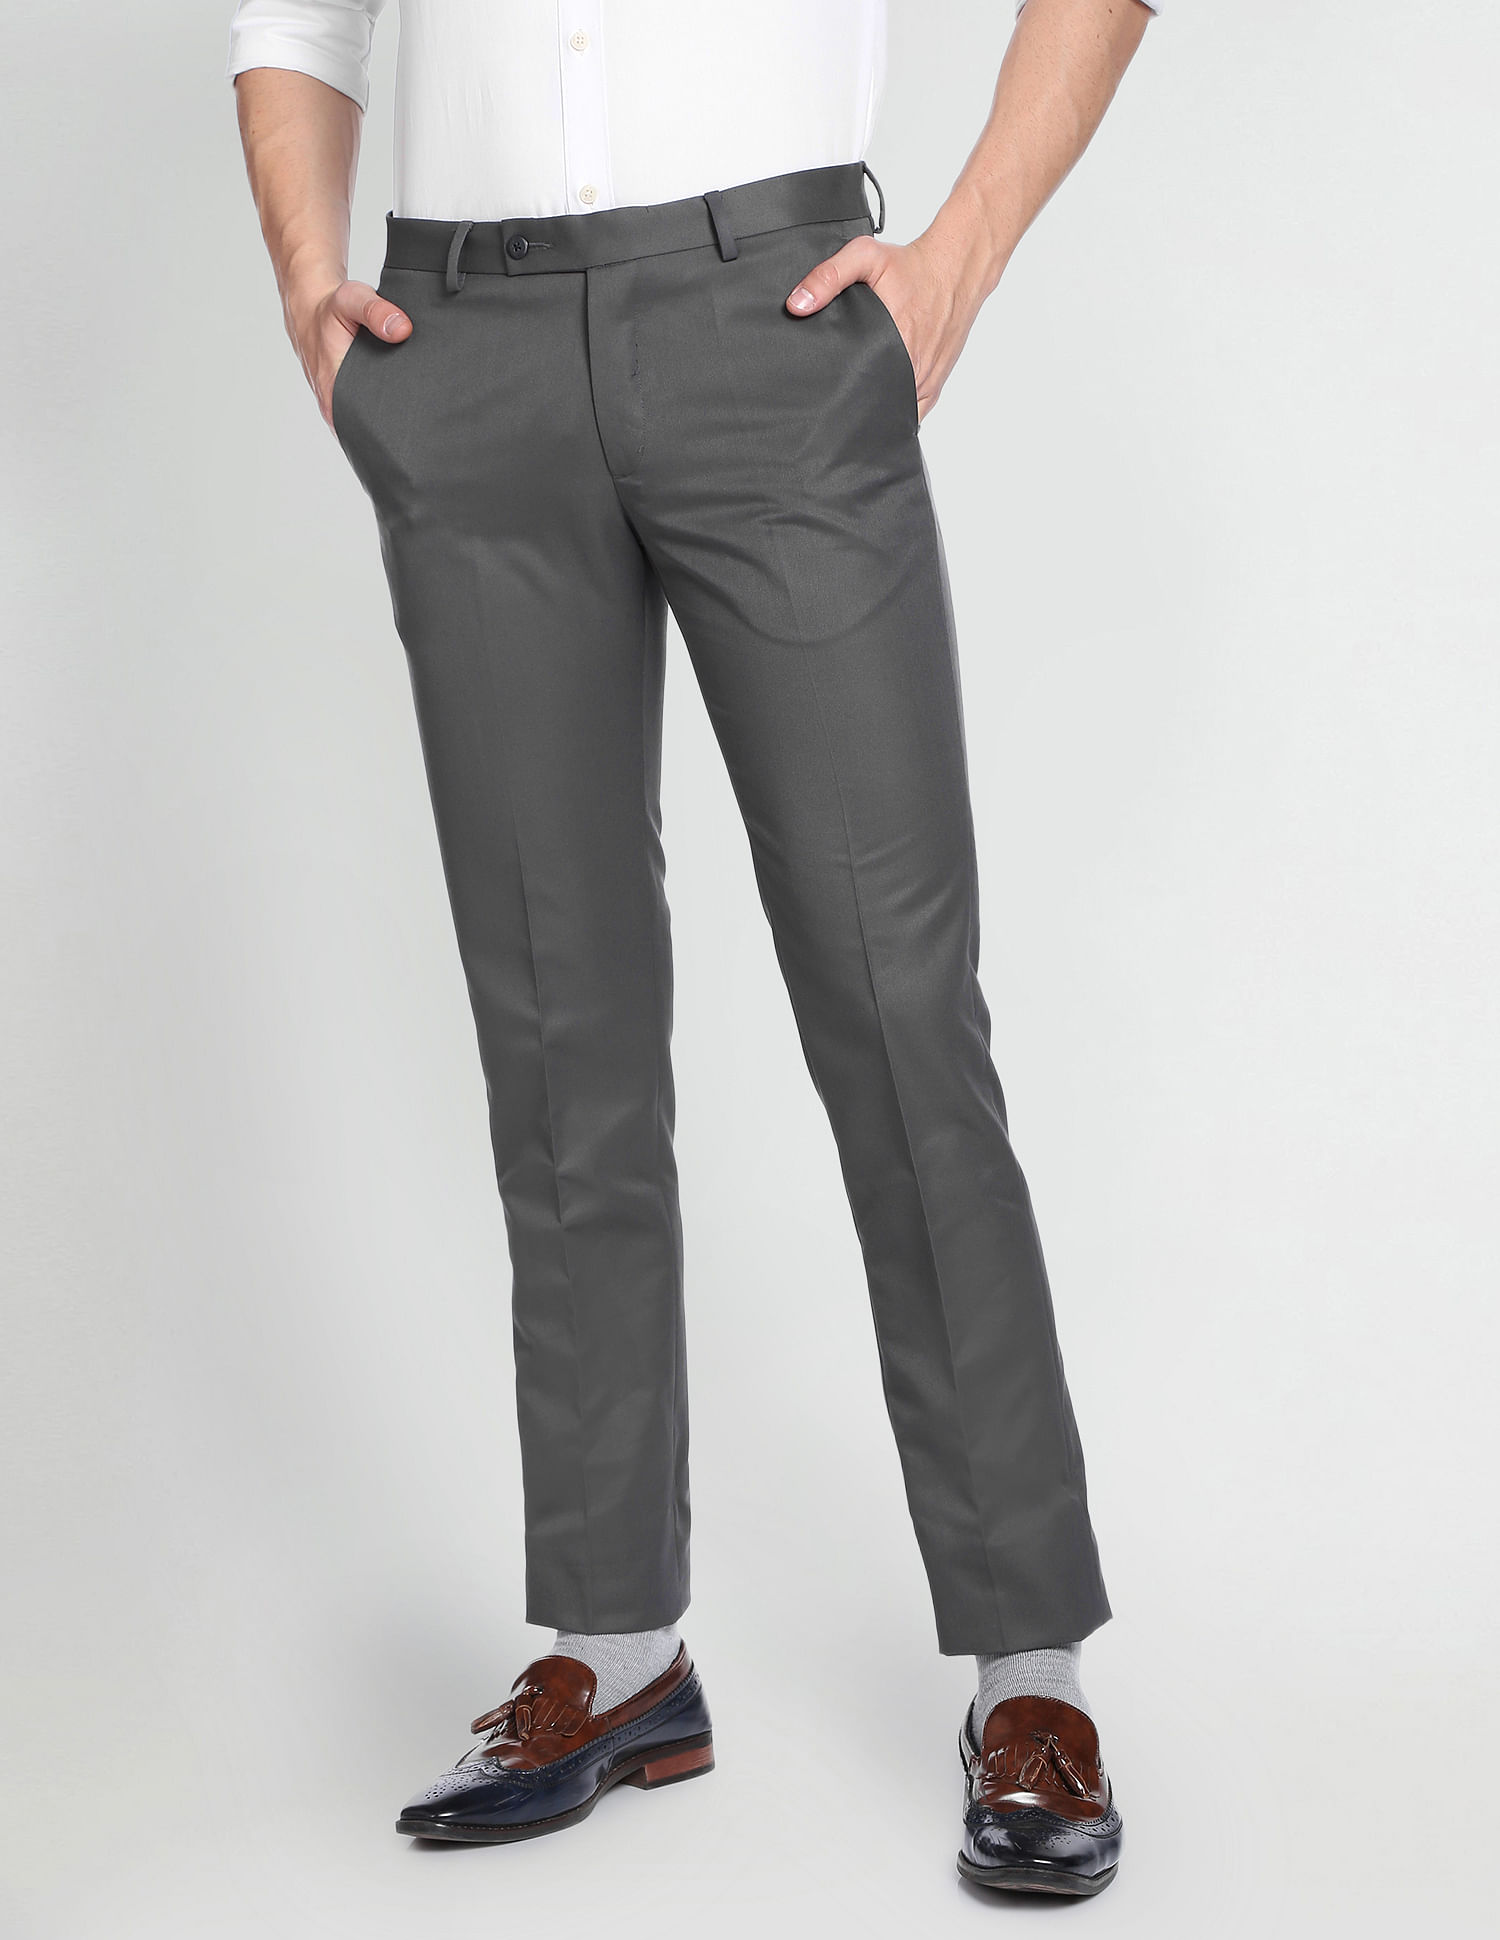 Buy Arrow Sport Mens Slim Fit Geometric Printed Casual Trousers Online -  Lulu Hypermarket India